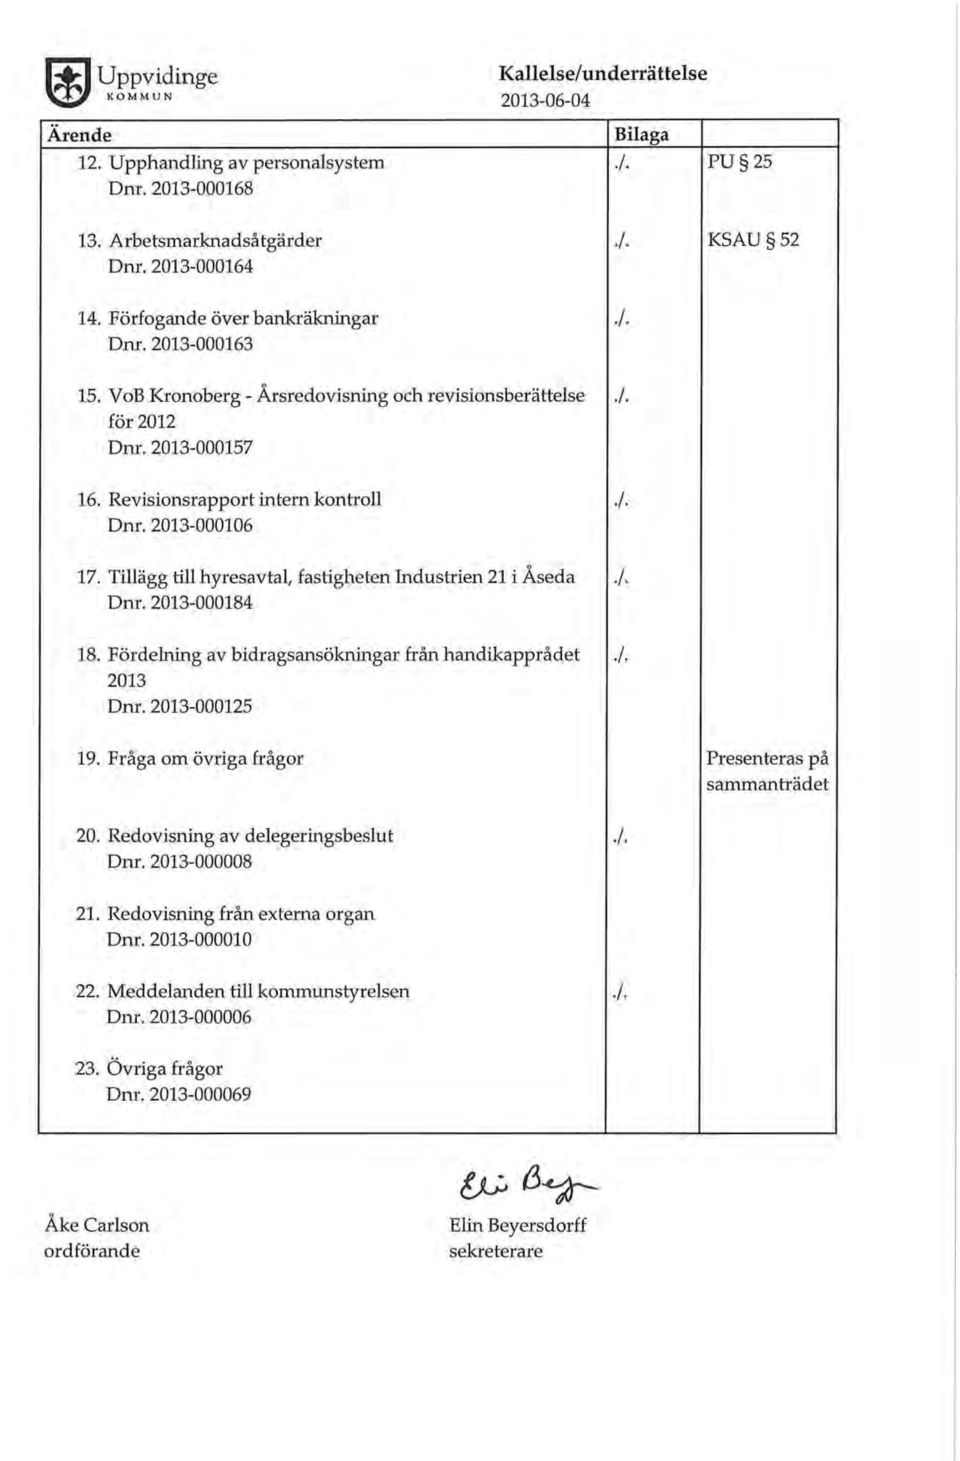 Tillägg till hyresavtal, fastigheten Industrien 21 i Åseda Dnr. 2013-000184 18. Fördelning av bidragsansökningar från handikapprådet 2013 Dnr. 2013-000125./ KSAU 52./../. A./../. 19.